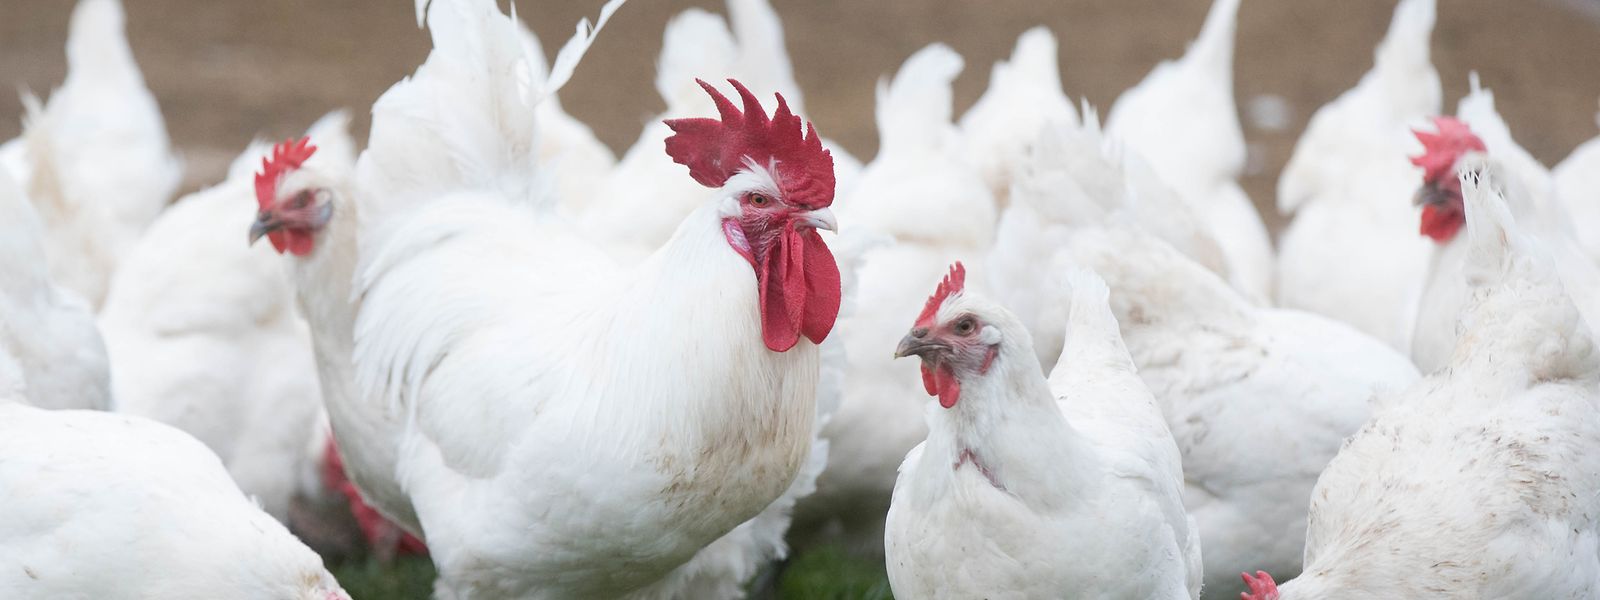 Am Freitagmorgen kam es zum einem Vogelgrippe-Fall vom Typ Typ H5N1.